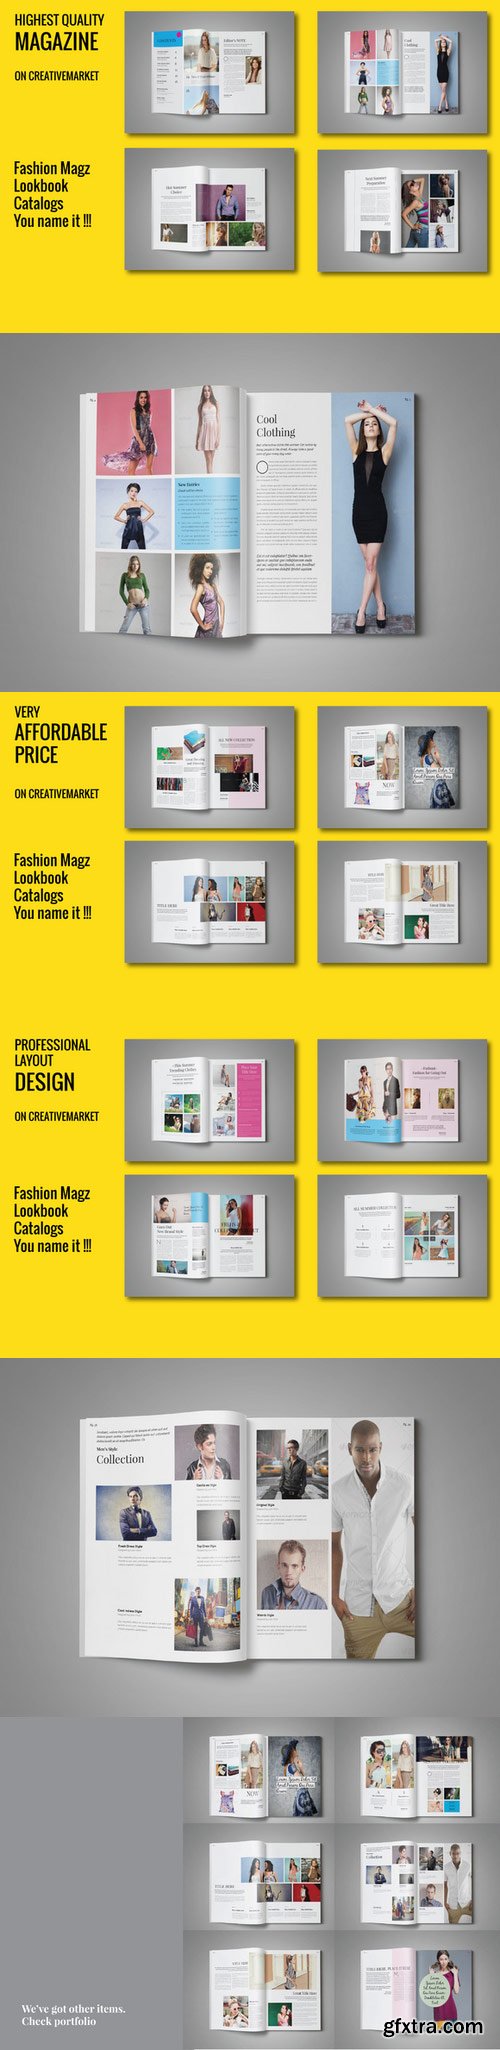 CM - Fashion Magazine - Vol.6 363538